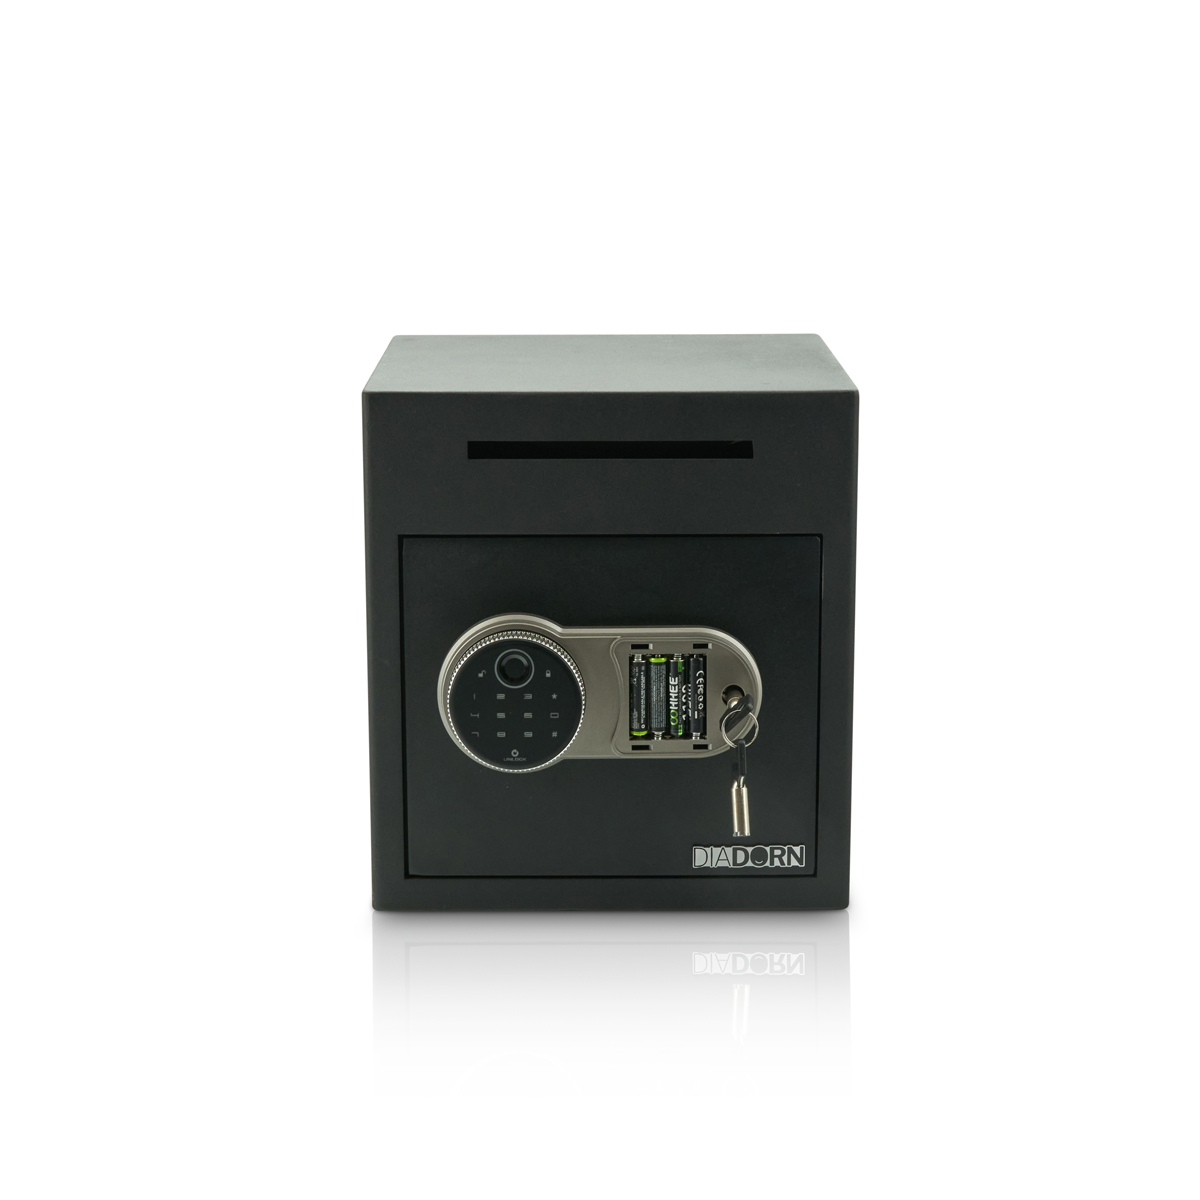 Cofre de depósito com fechadura de código PIN com impressão digital | Scanner de impressão digital | Gastronomia